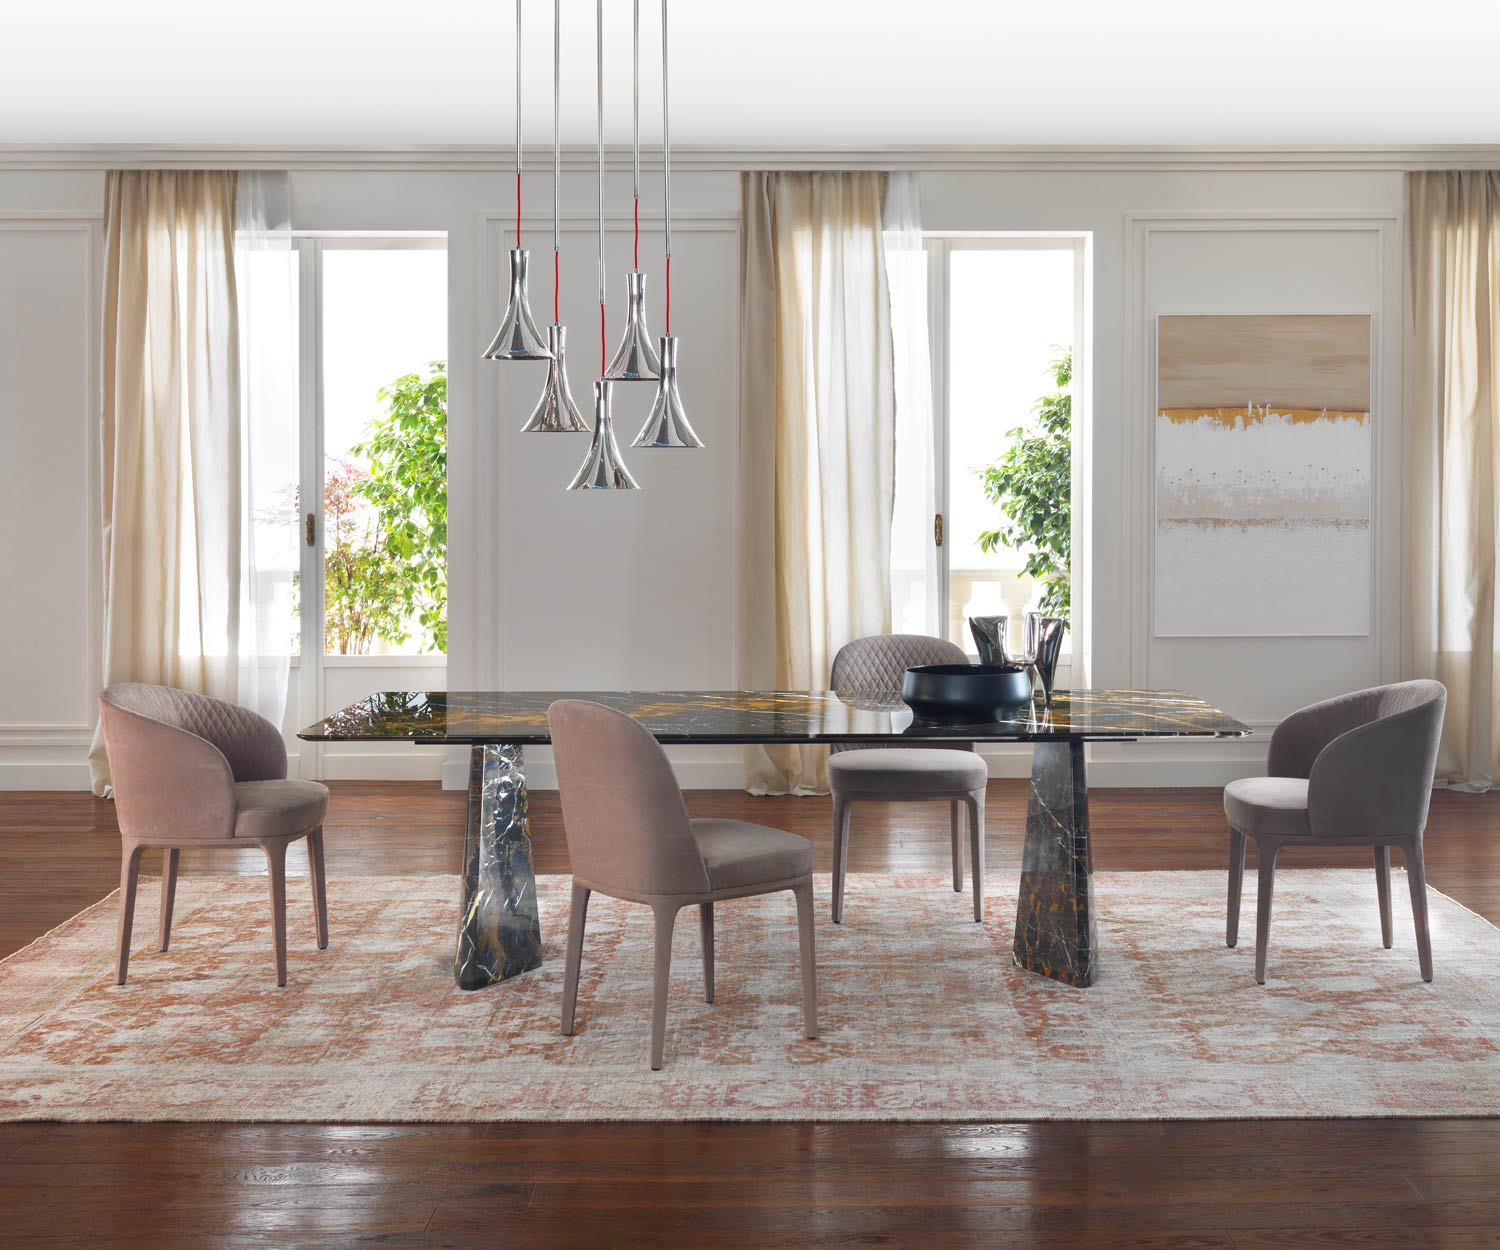 Stijlvolle design marmeren eettafel in de eetkamer met stoelen gegroepeerd in een ensemble